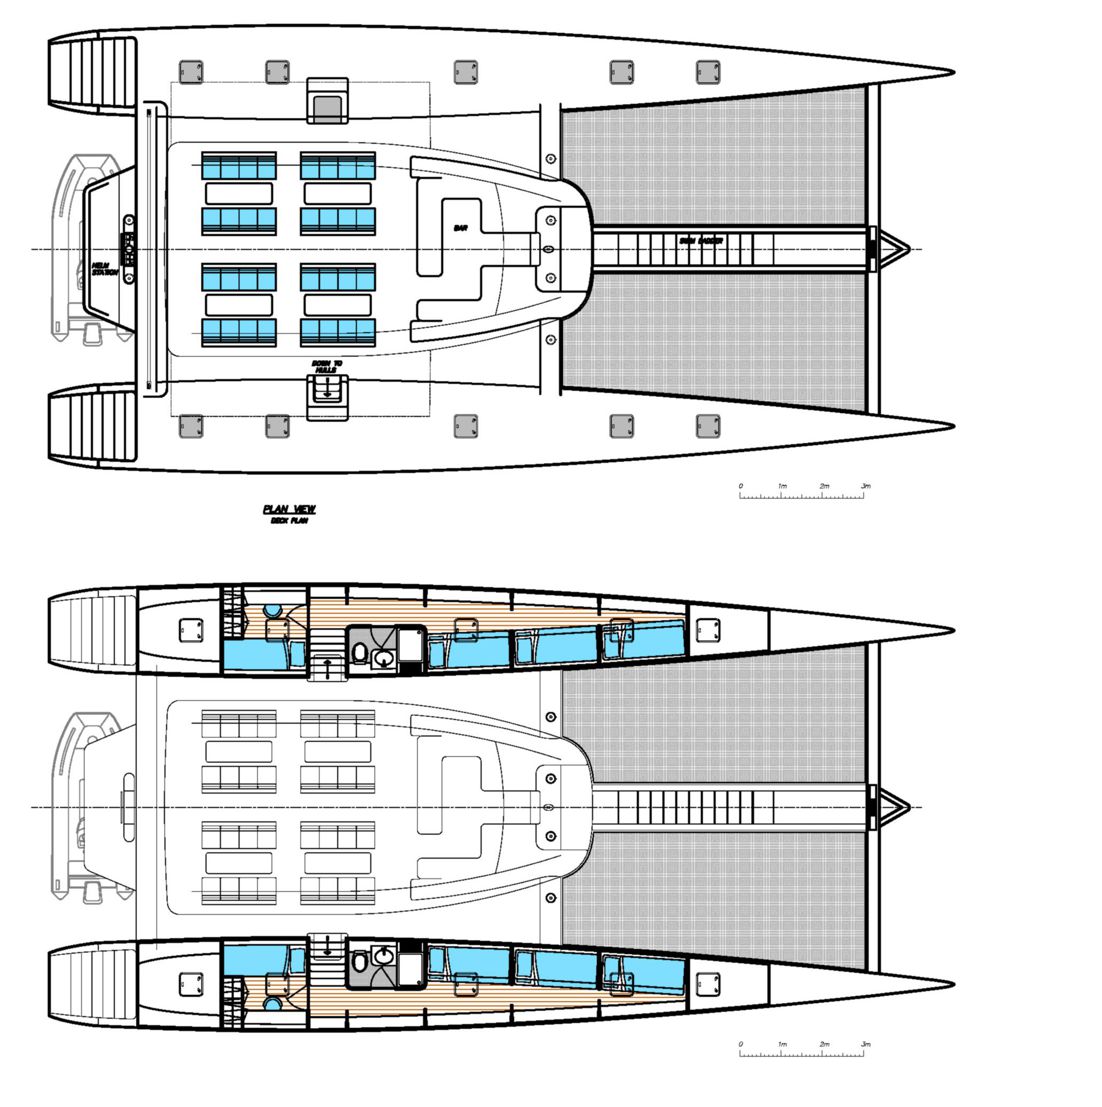 Blubay 72' Day Charter passager cata voile par Luc Simon, architecte et designer naval, constructeur de bateau.